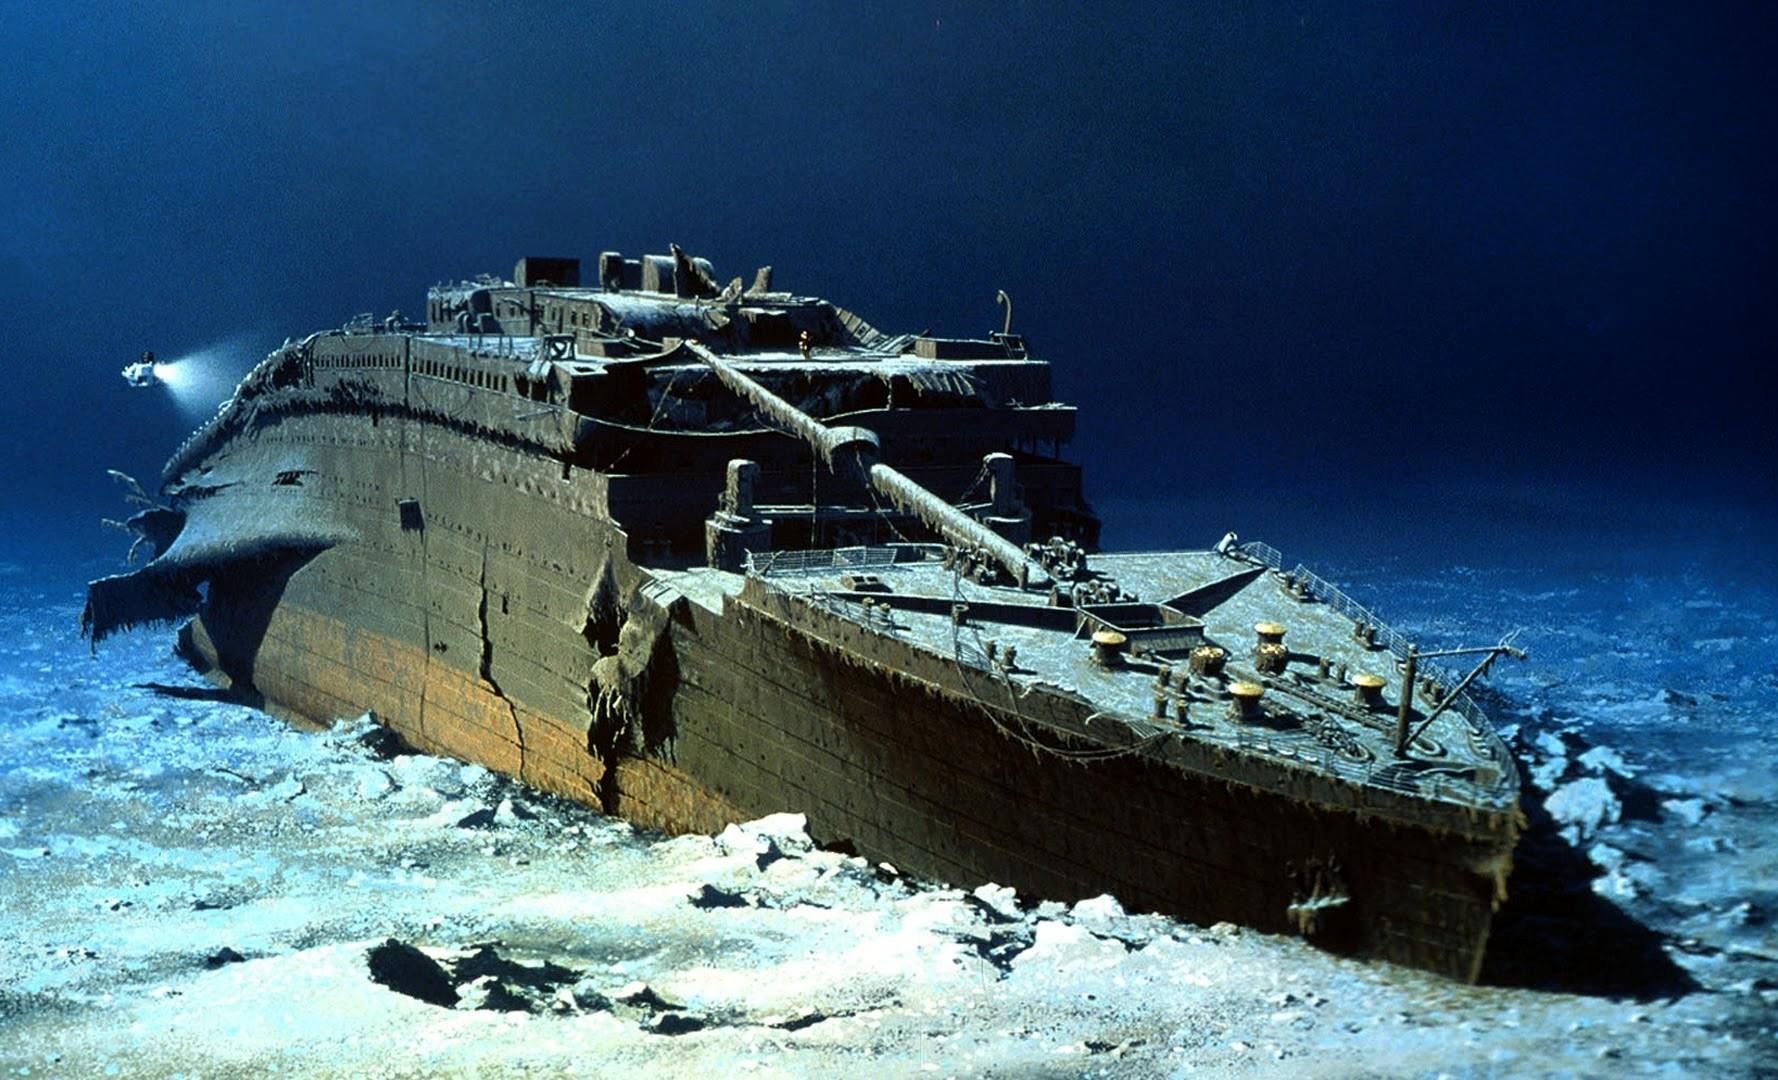 افشای راز 110 ساله غرق شدن کشتی تایتانیک + عکس